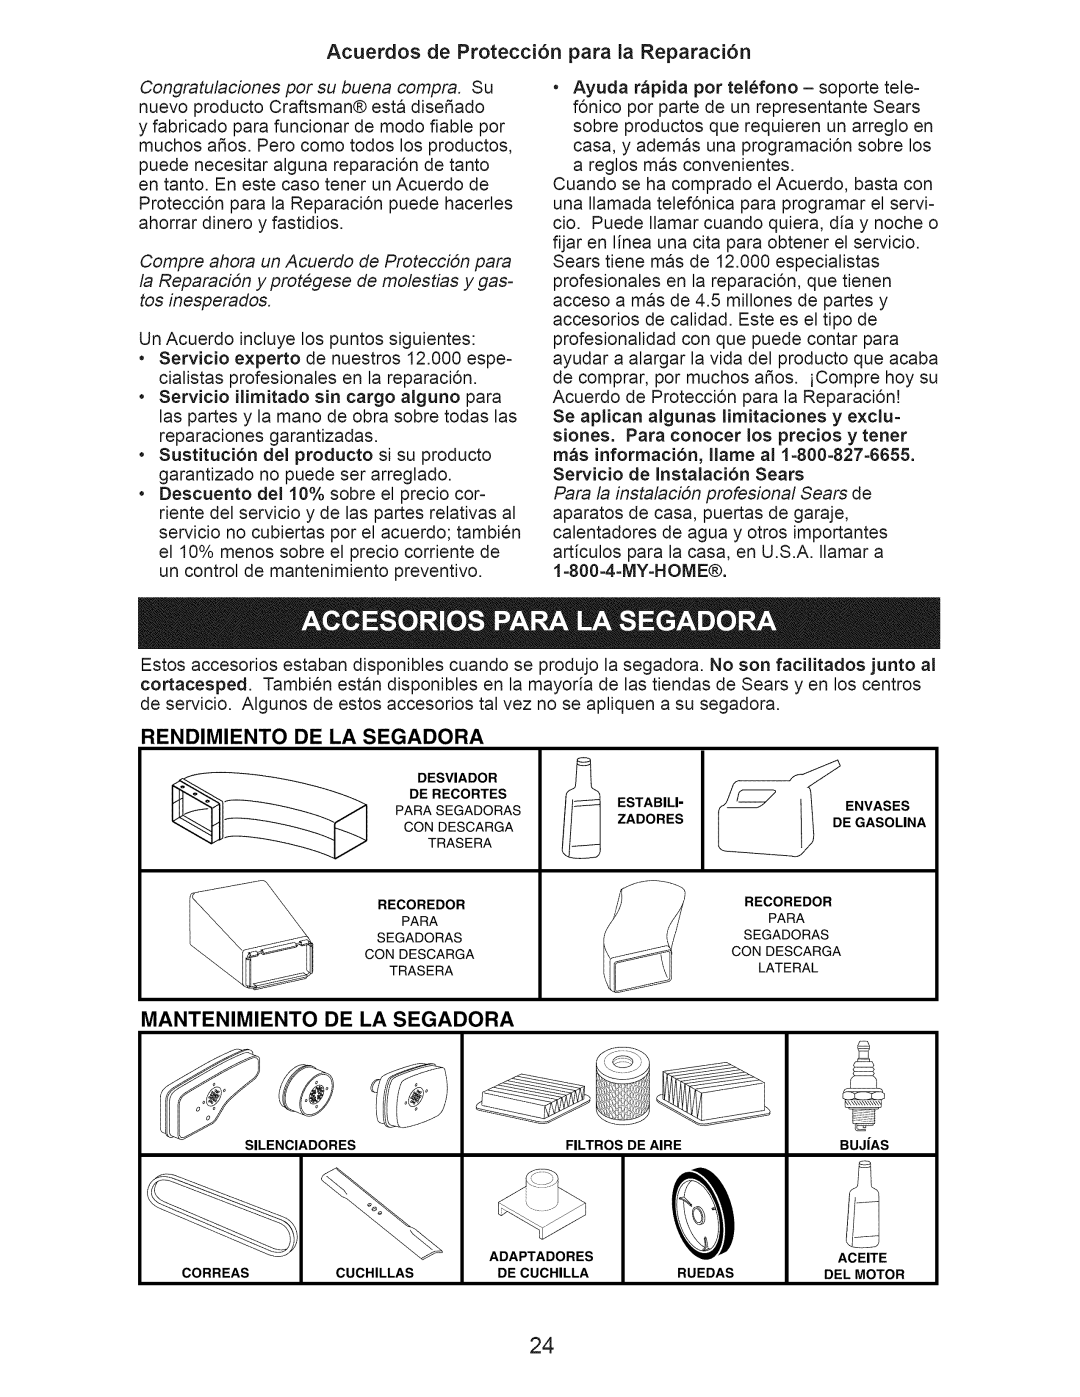 Craftsman 917.374364 Acuerdos de Protecci6n para la Reparaci6n, Rendimiento De La Segadora, Mantenimiento De La Segadora 